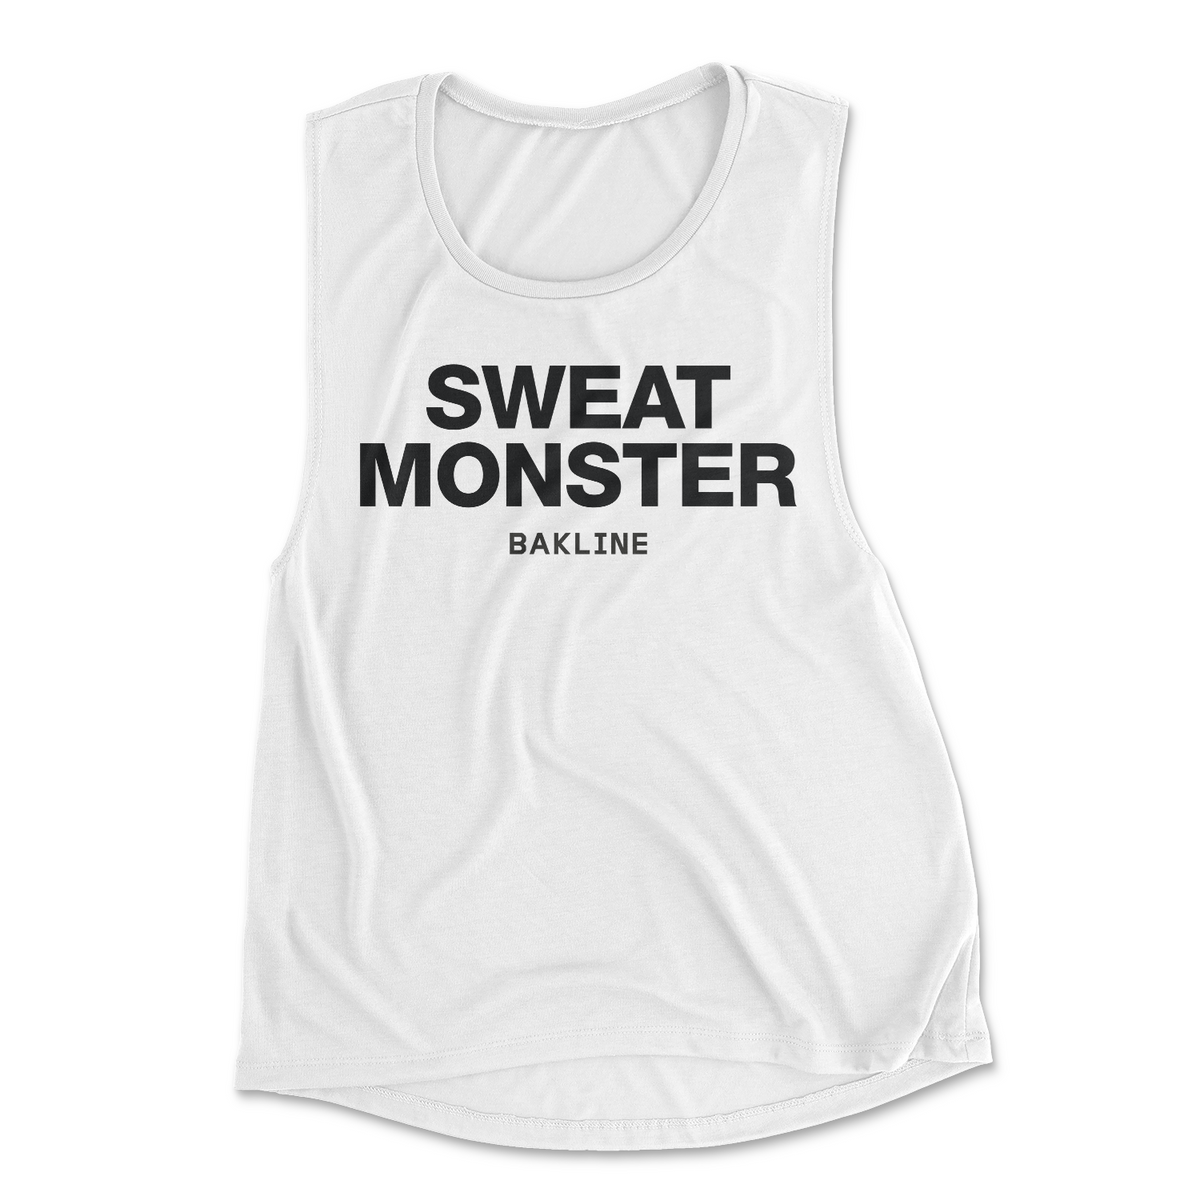 Sweat Monster - Muscle Tank - Women's - Bakline